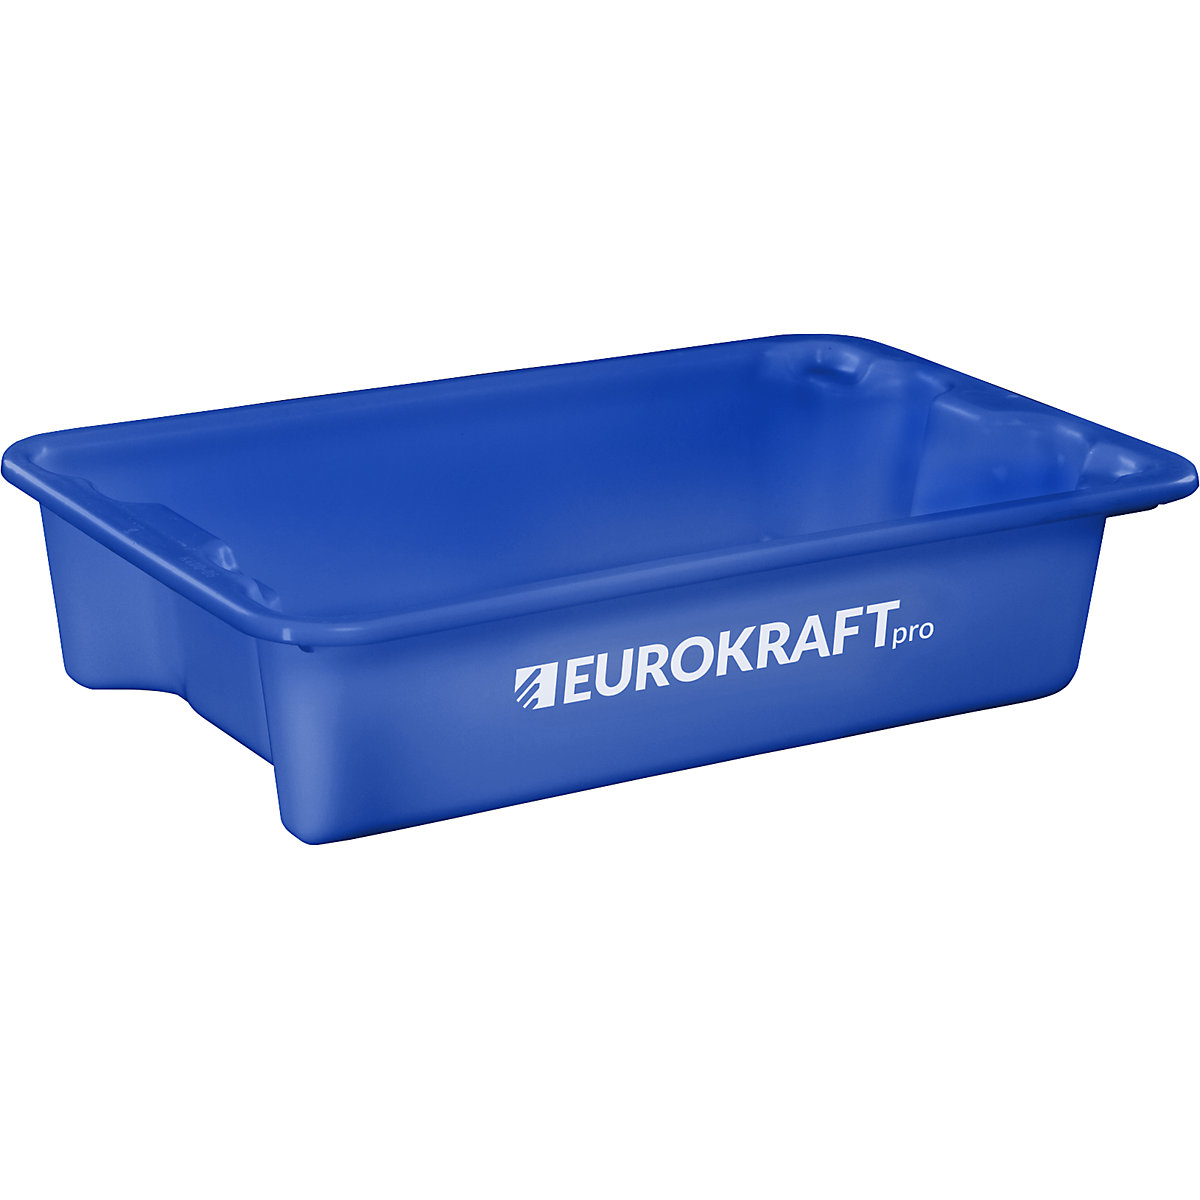 EUROKRAFTpro – Otočná stohovacia nádoba z polypropylénu vhodného pre potraviny, objem 18 litrov, OJ 3 ks, steny a dno uzatvorené, modrá